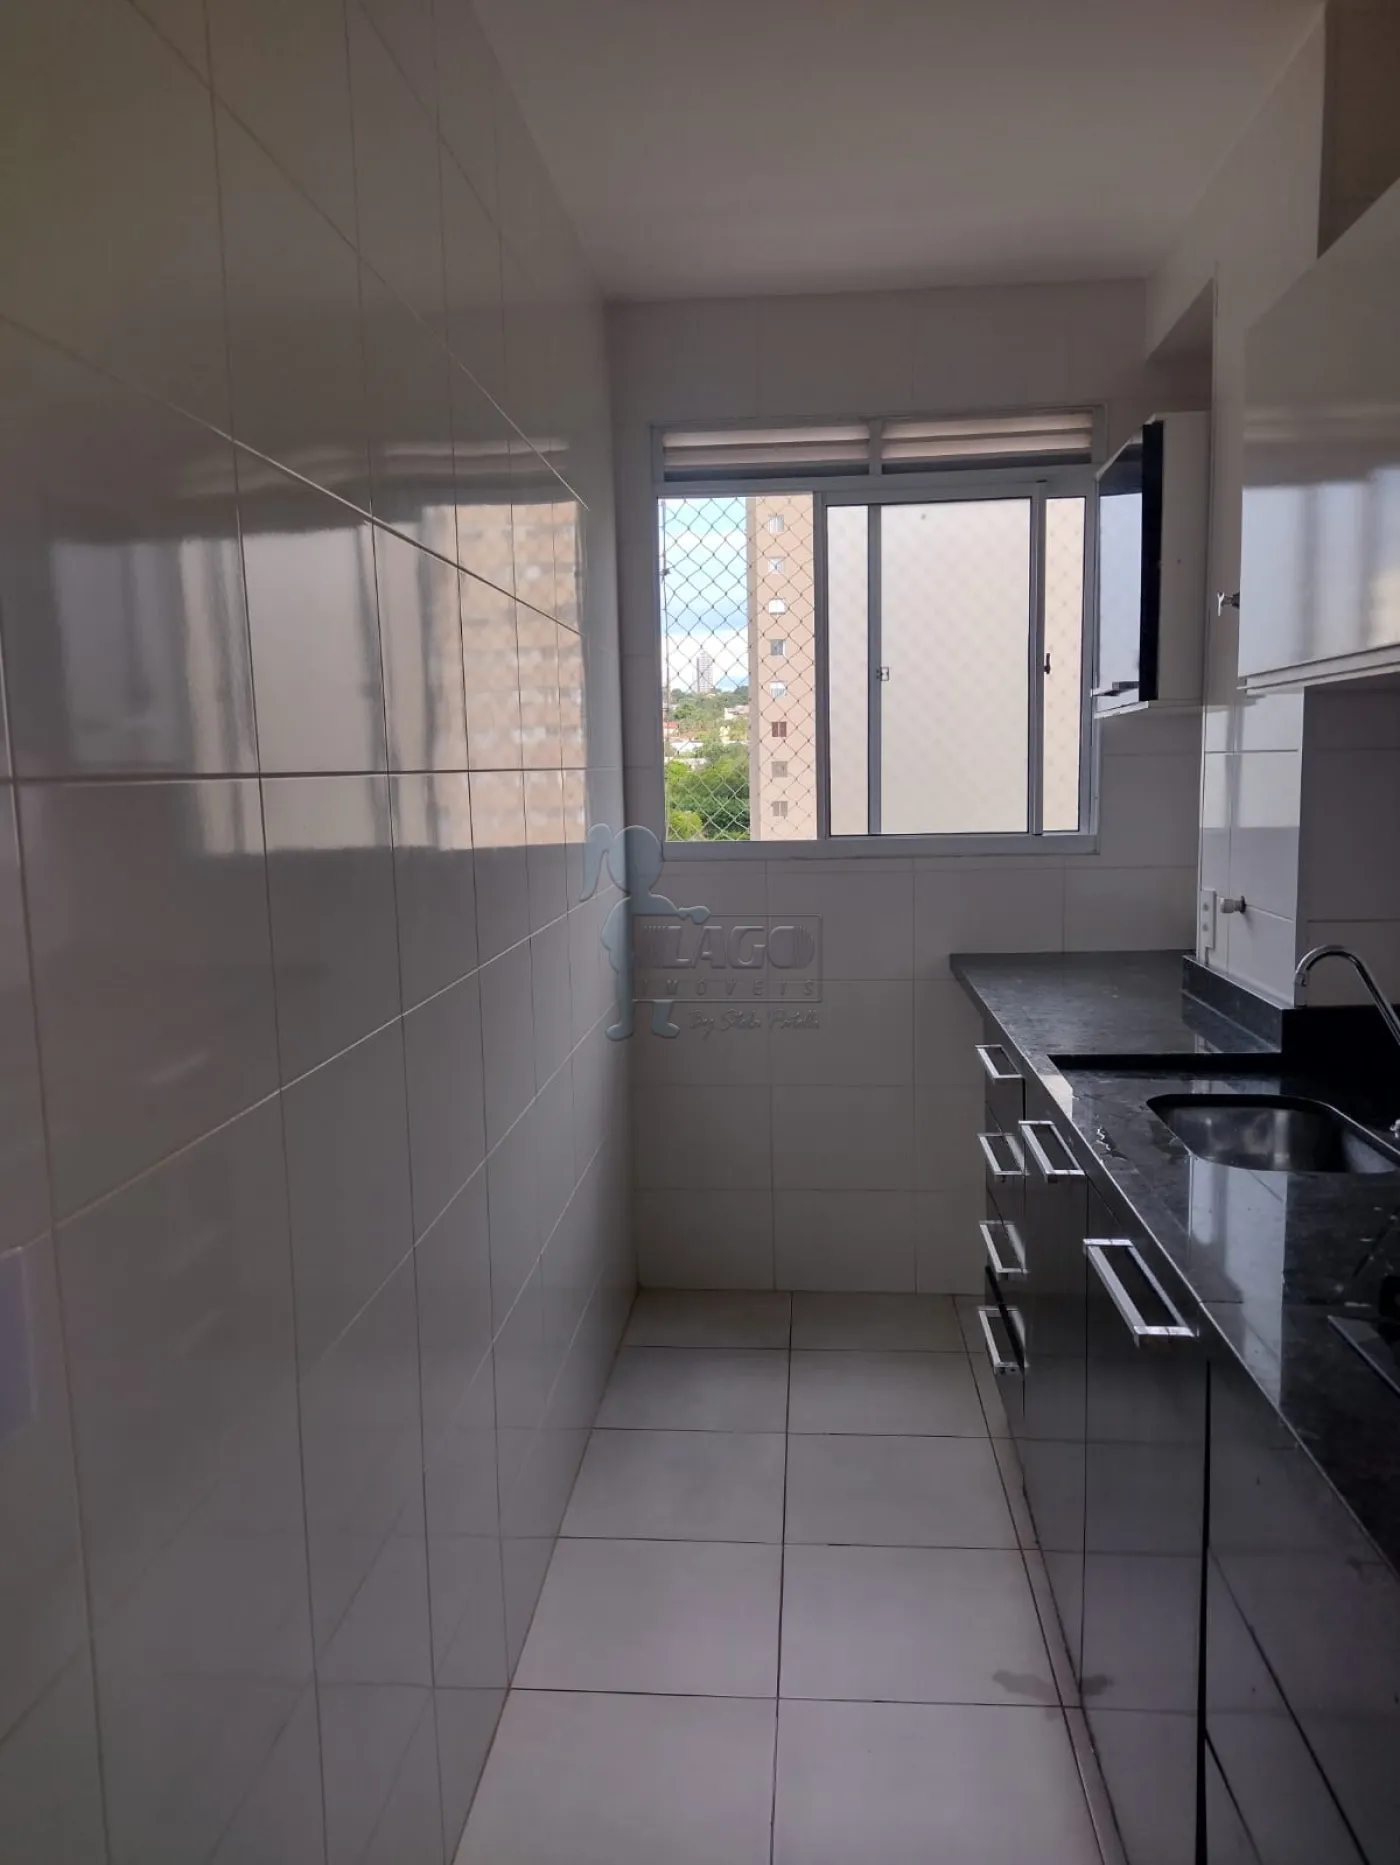 Comprar Apartamentos / Padrão em Ribeirão Preto R$ 255.000,00 - Foto 9